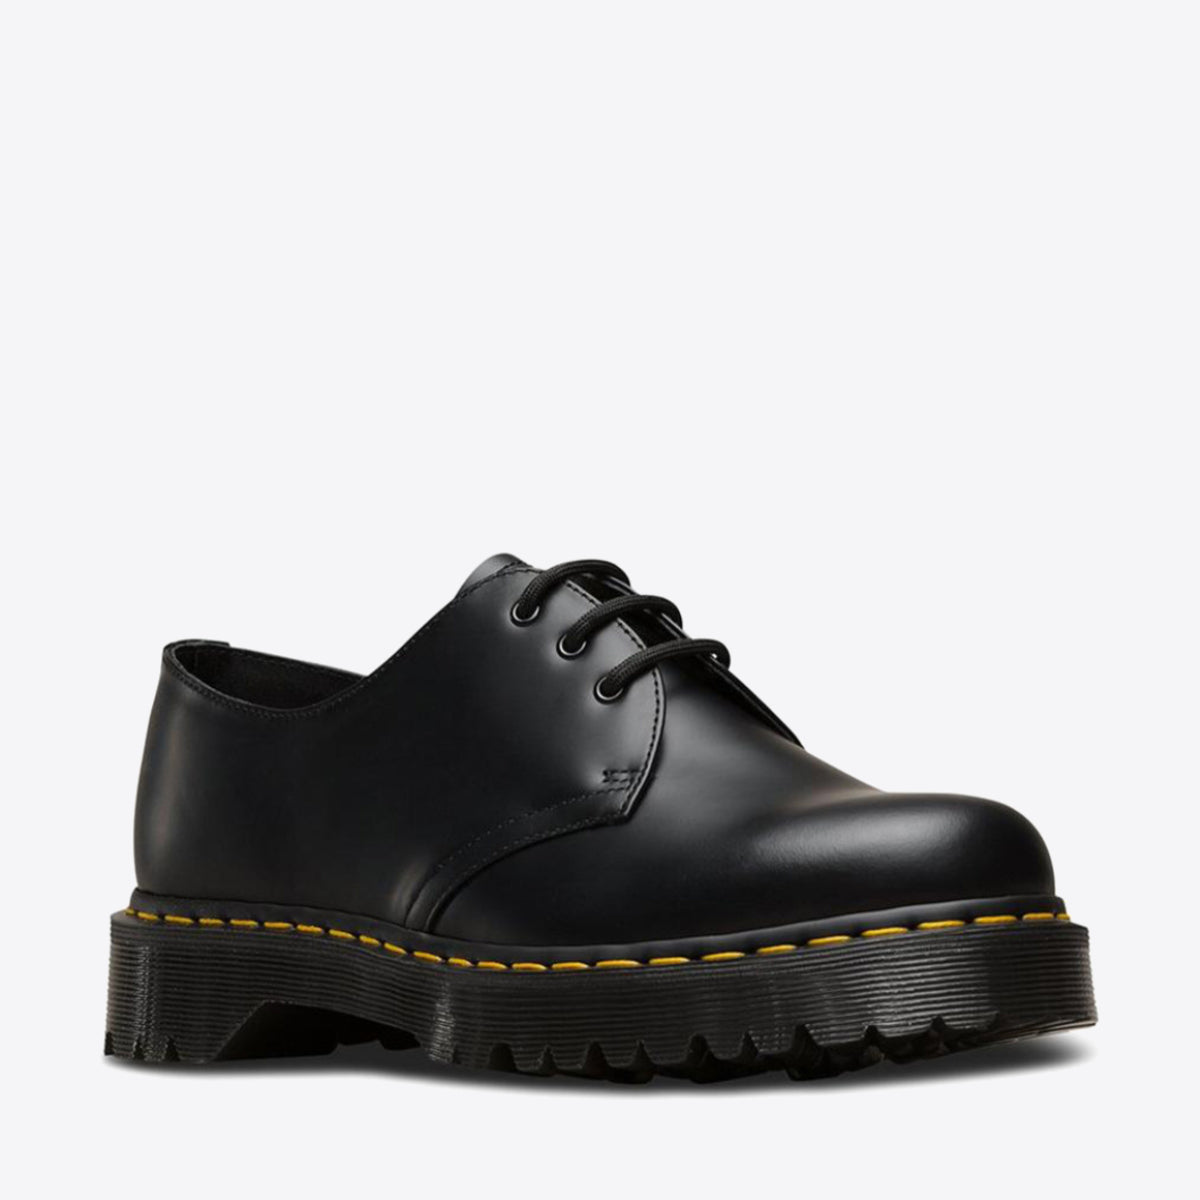 DR MARTENS 1461 Bex 3-Eye Shoes Black - Image 8